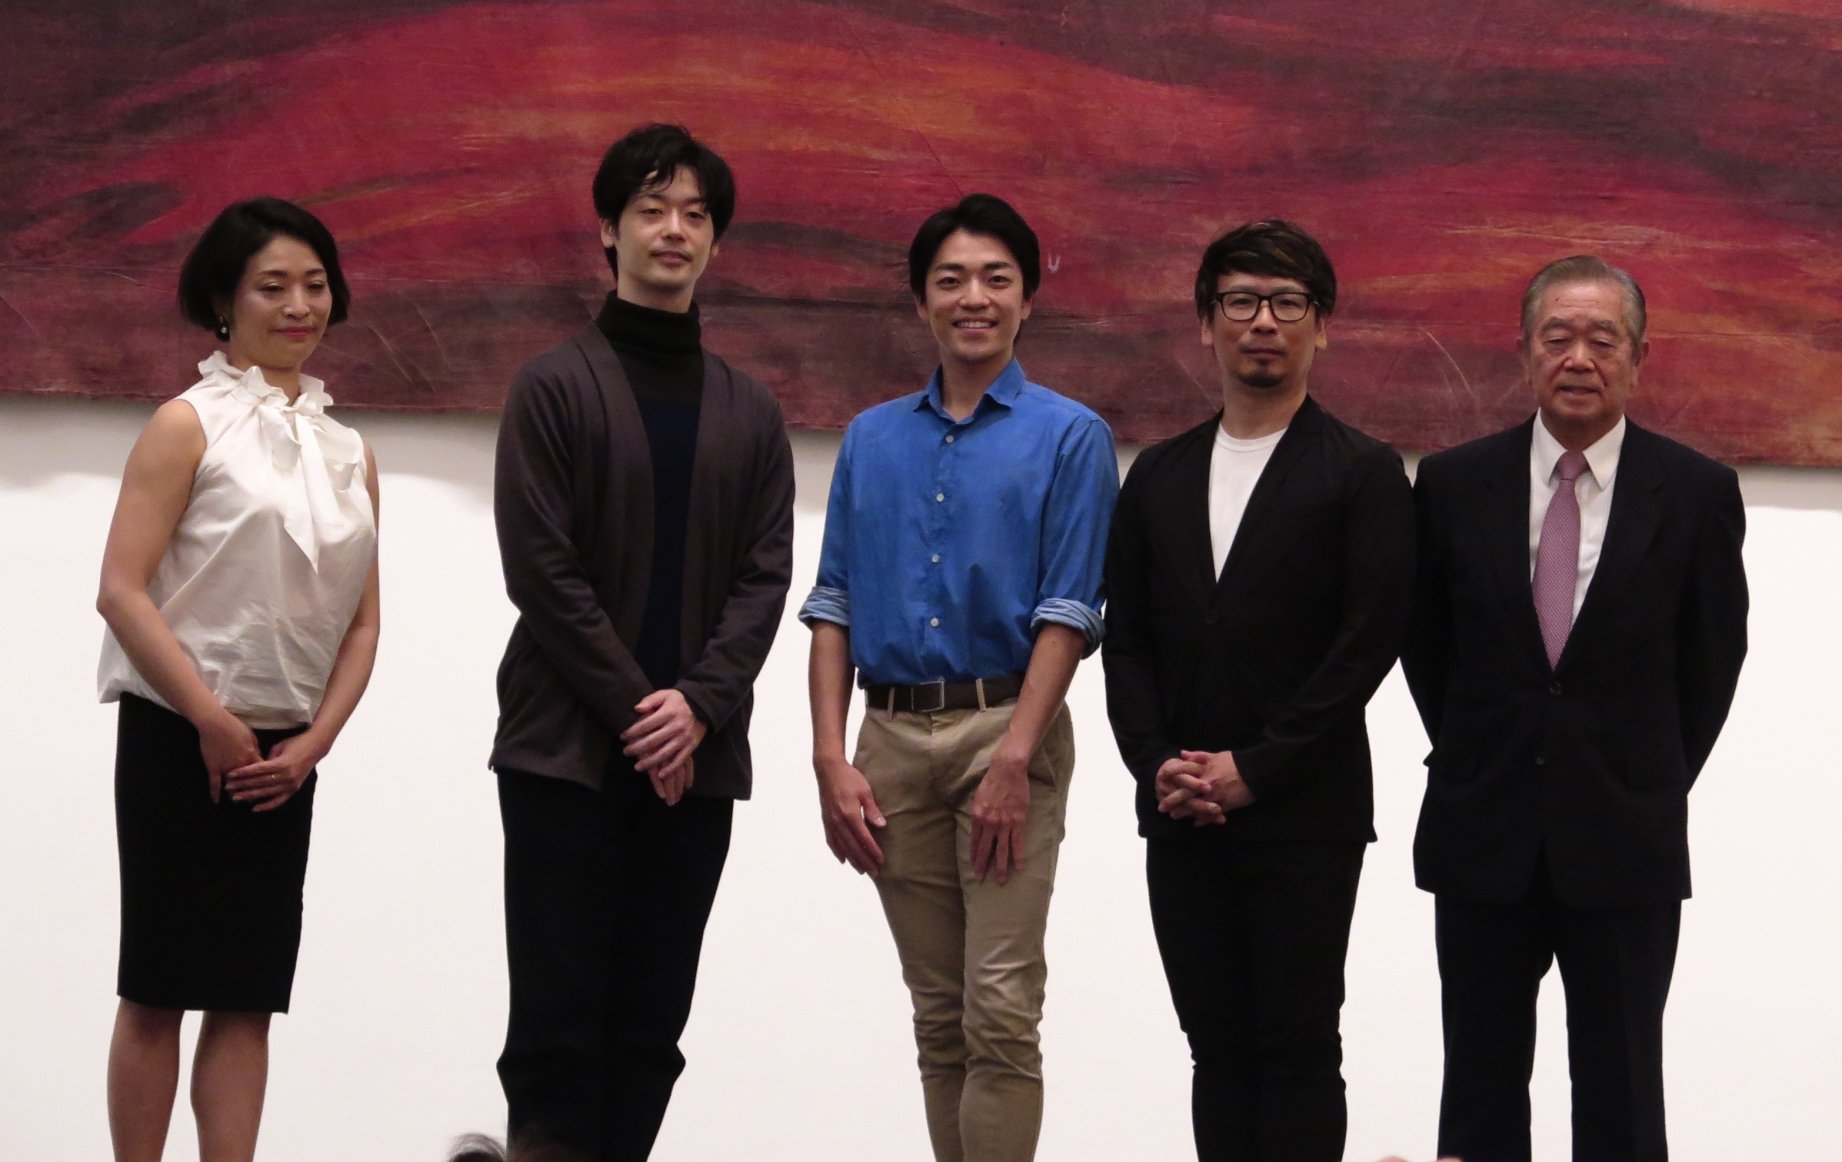 青森県立美術館版バレエ「アレコ」公演の開催概要を発表しました